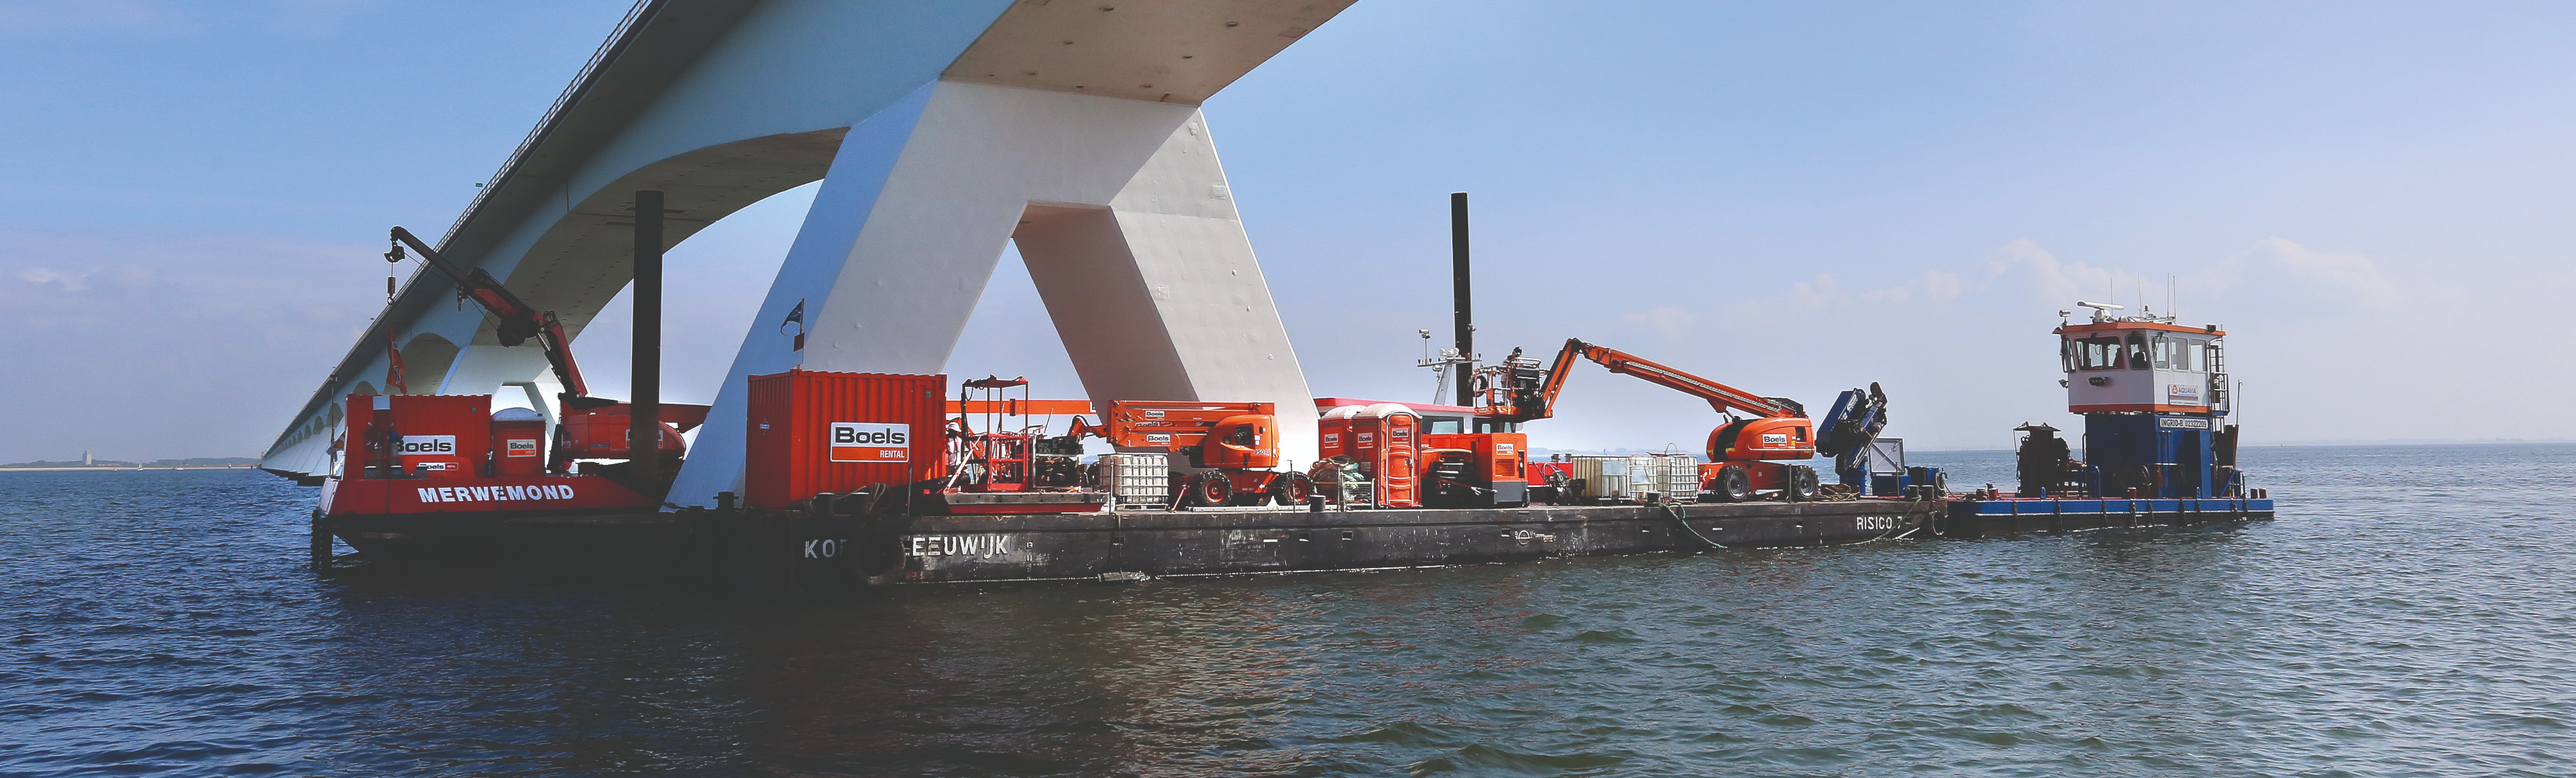 Jelentős karbantartási munkálatok a Zeeland-hídon 